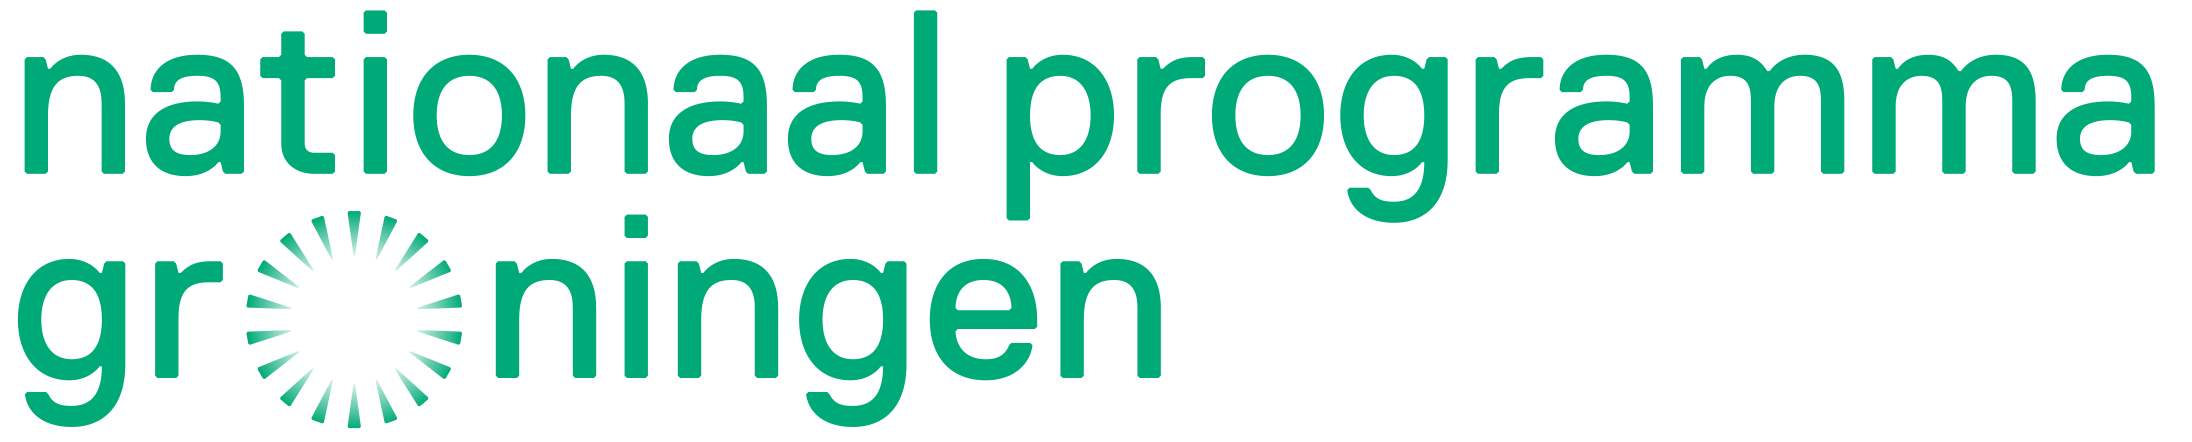 Nationaalprogramma Groningen logo